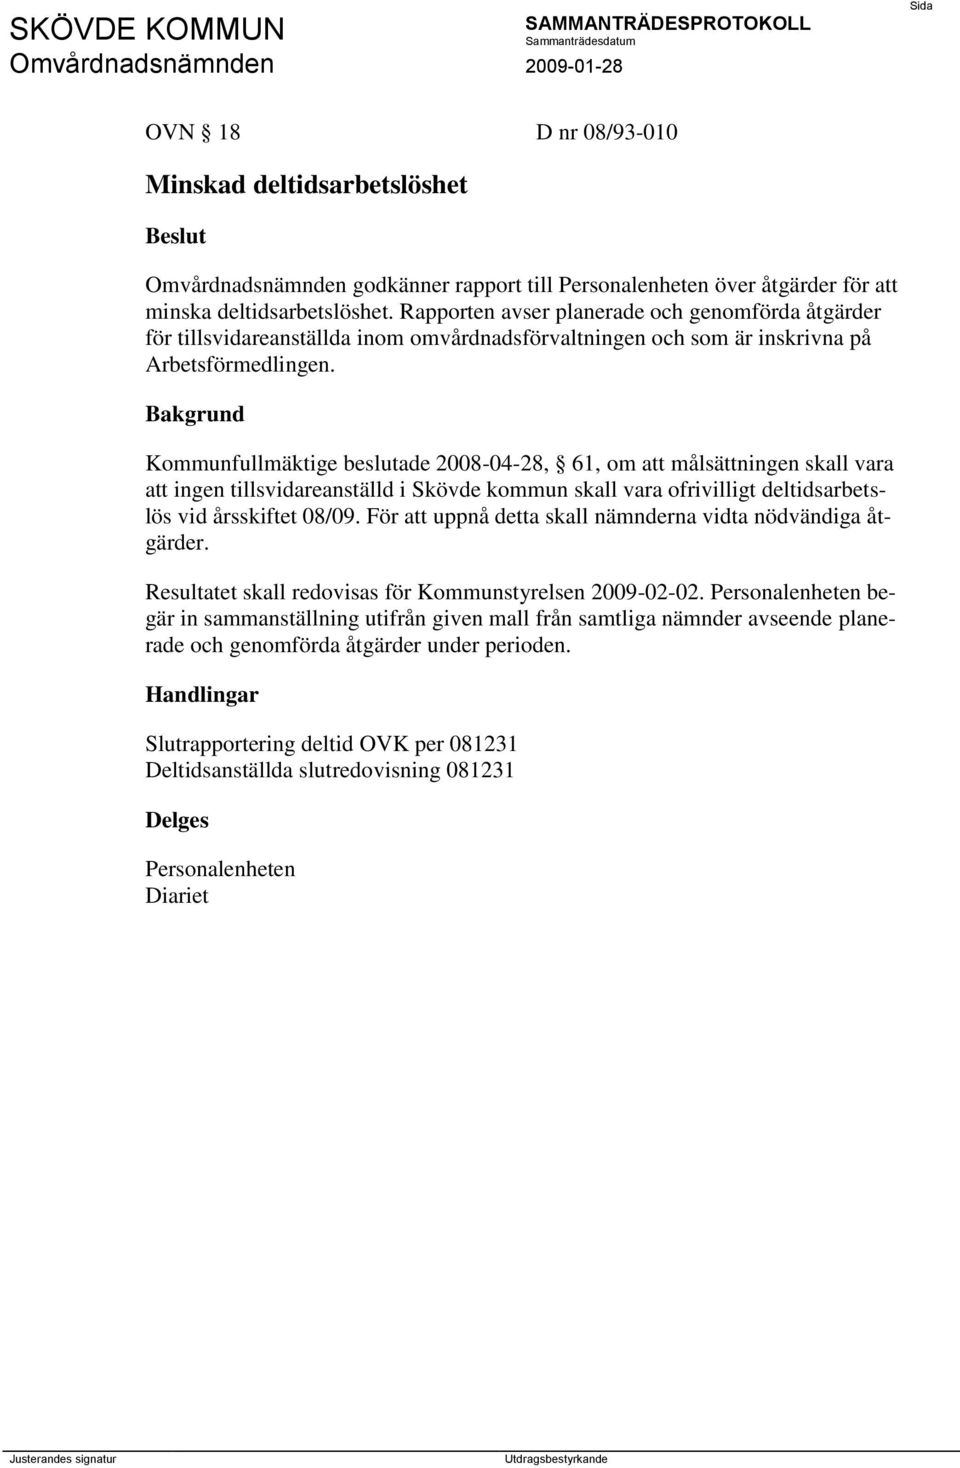 Kommunfullmäktige beslutade 2008-04-28, 61, om att målsättningen skall vara att ingen tillsvidareanställd i Skövde kommun skall vara ofrivilligt deltidsarbetslös vid årsskiftet 08/09.